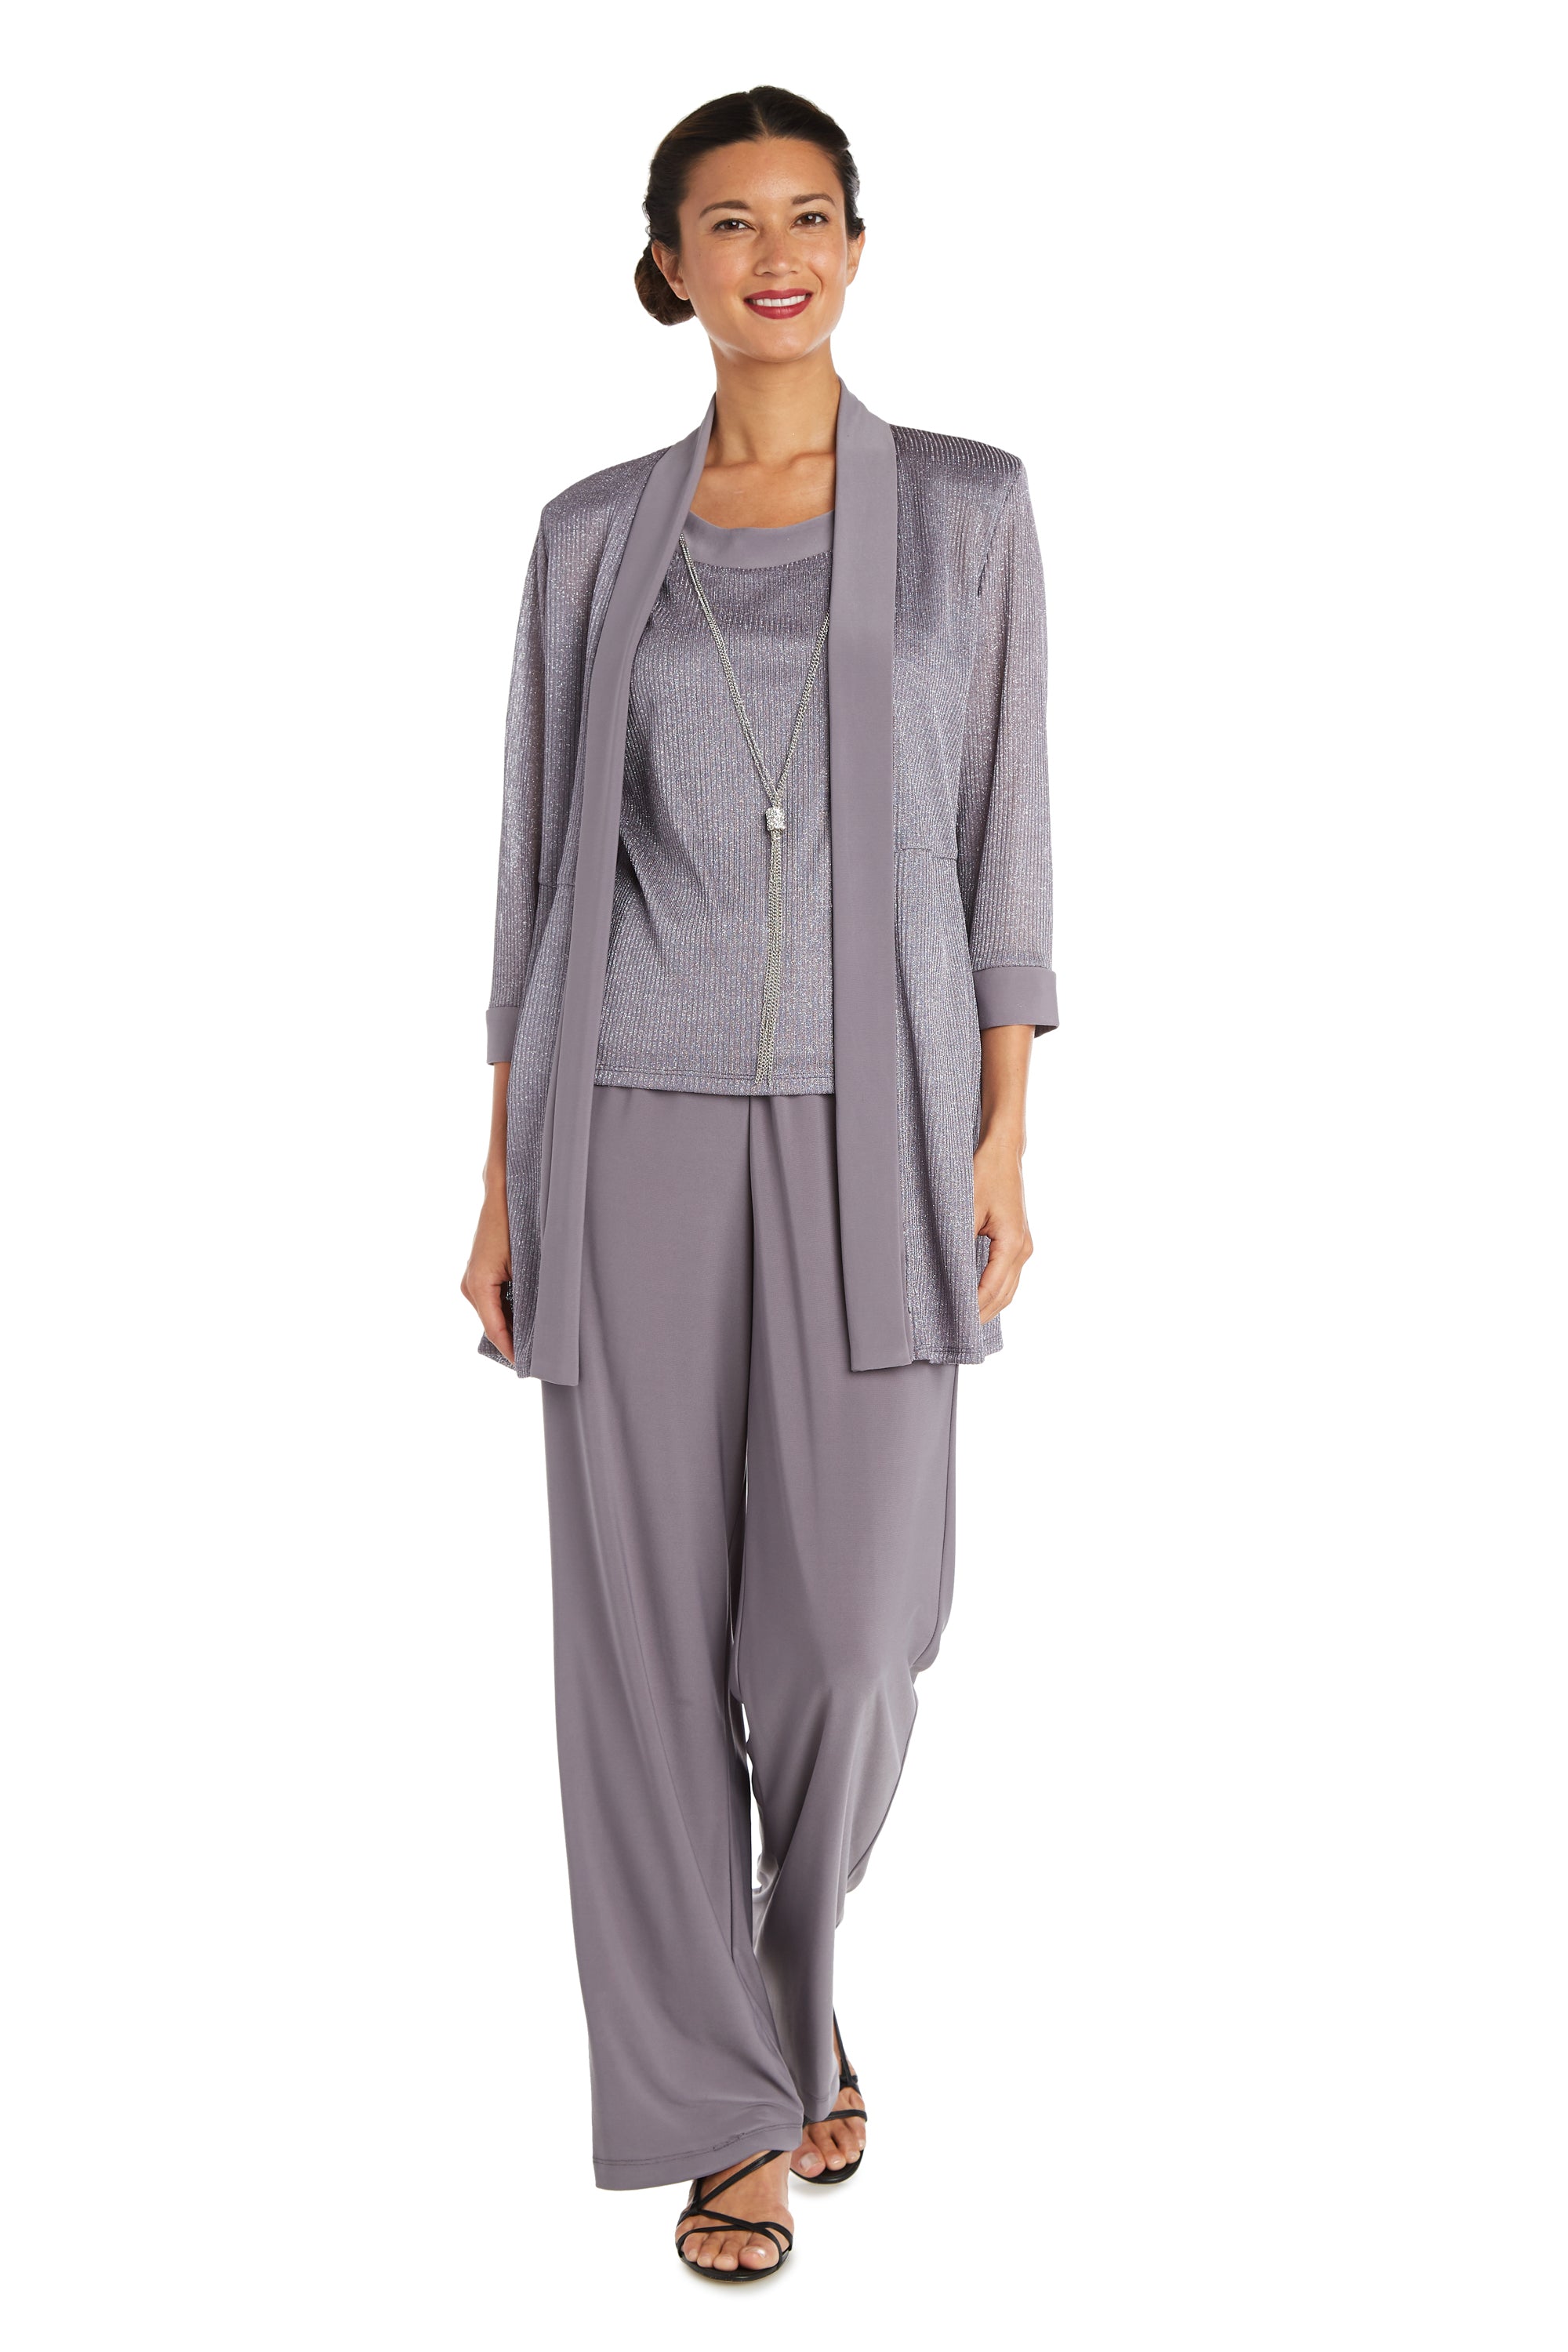 R&M Richards Formal Pant Suit 5902  The Dress Outlet – Wholesale Dress  Outlet